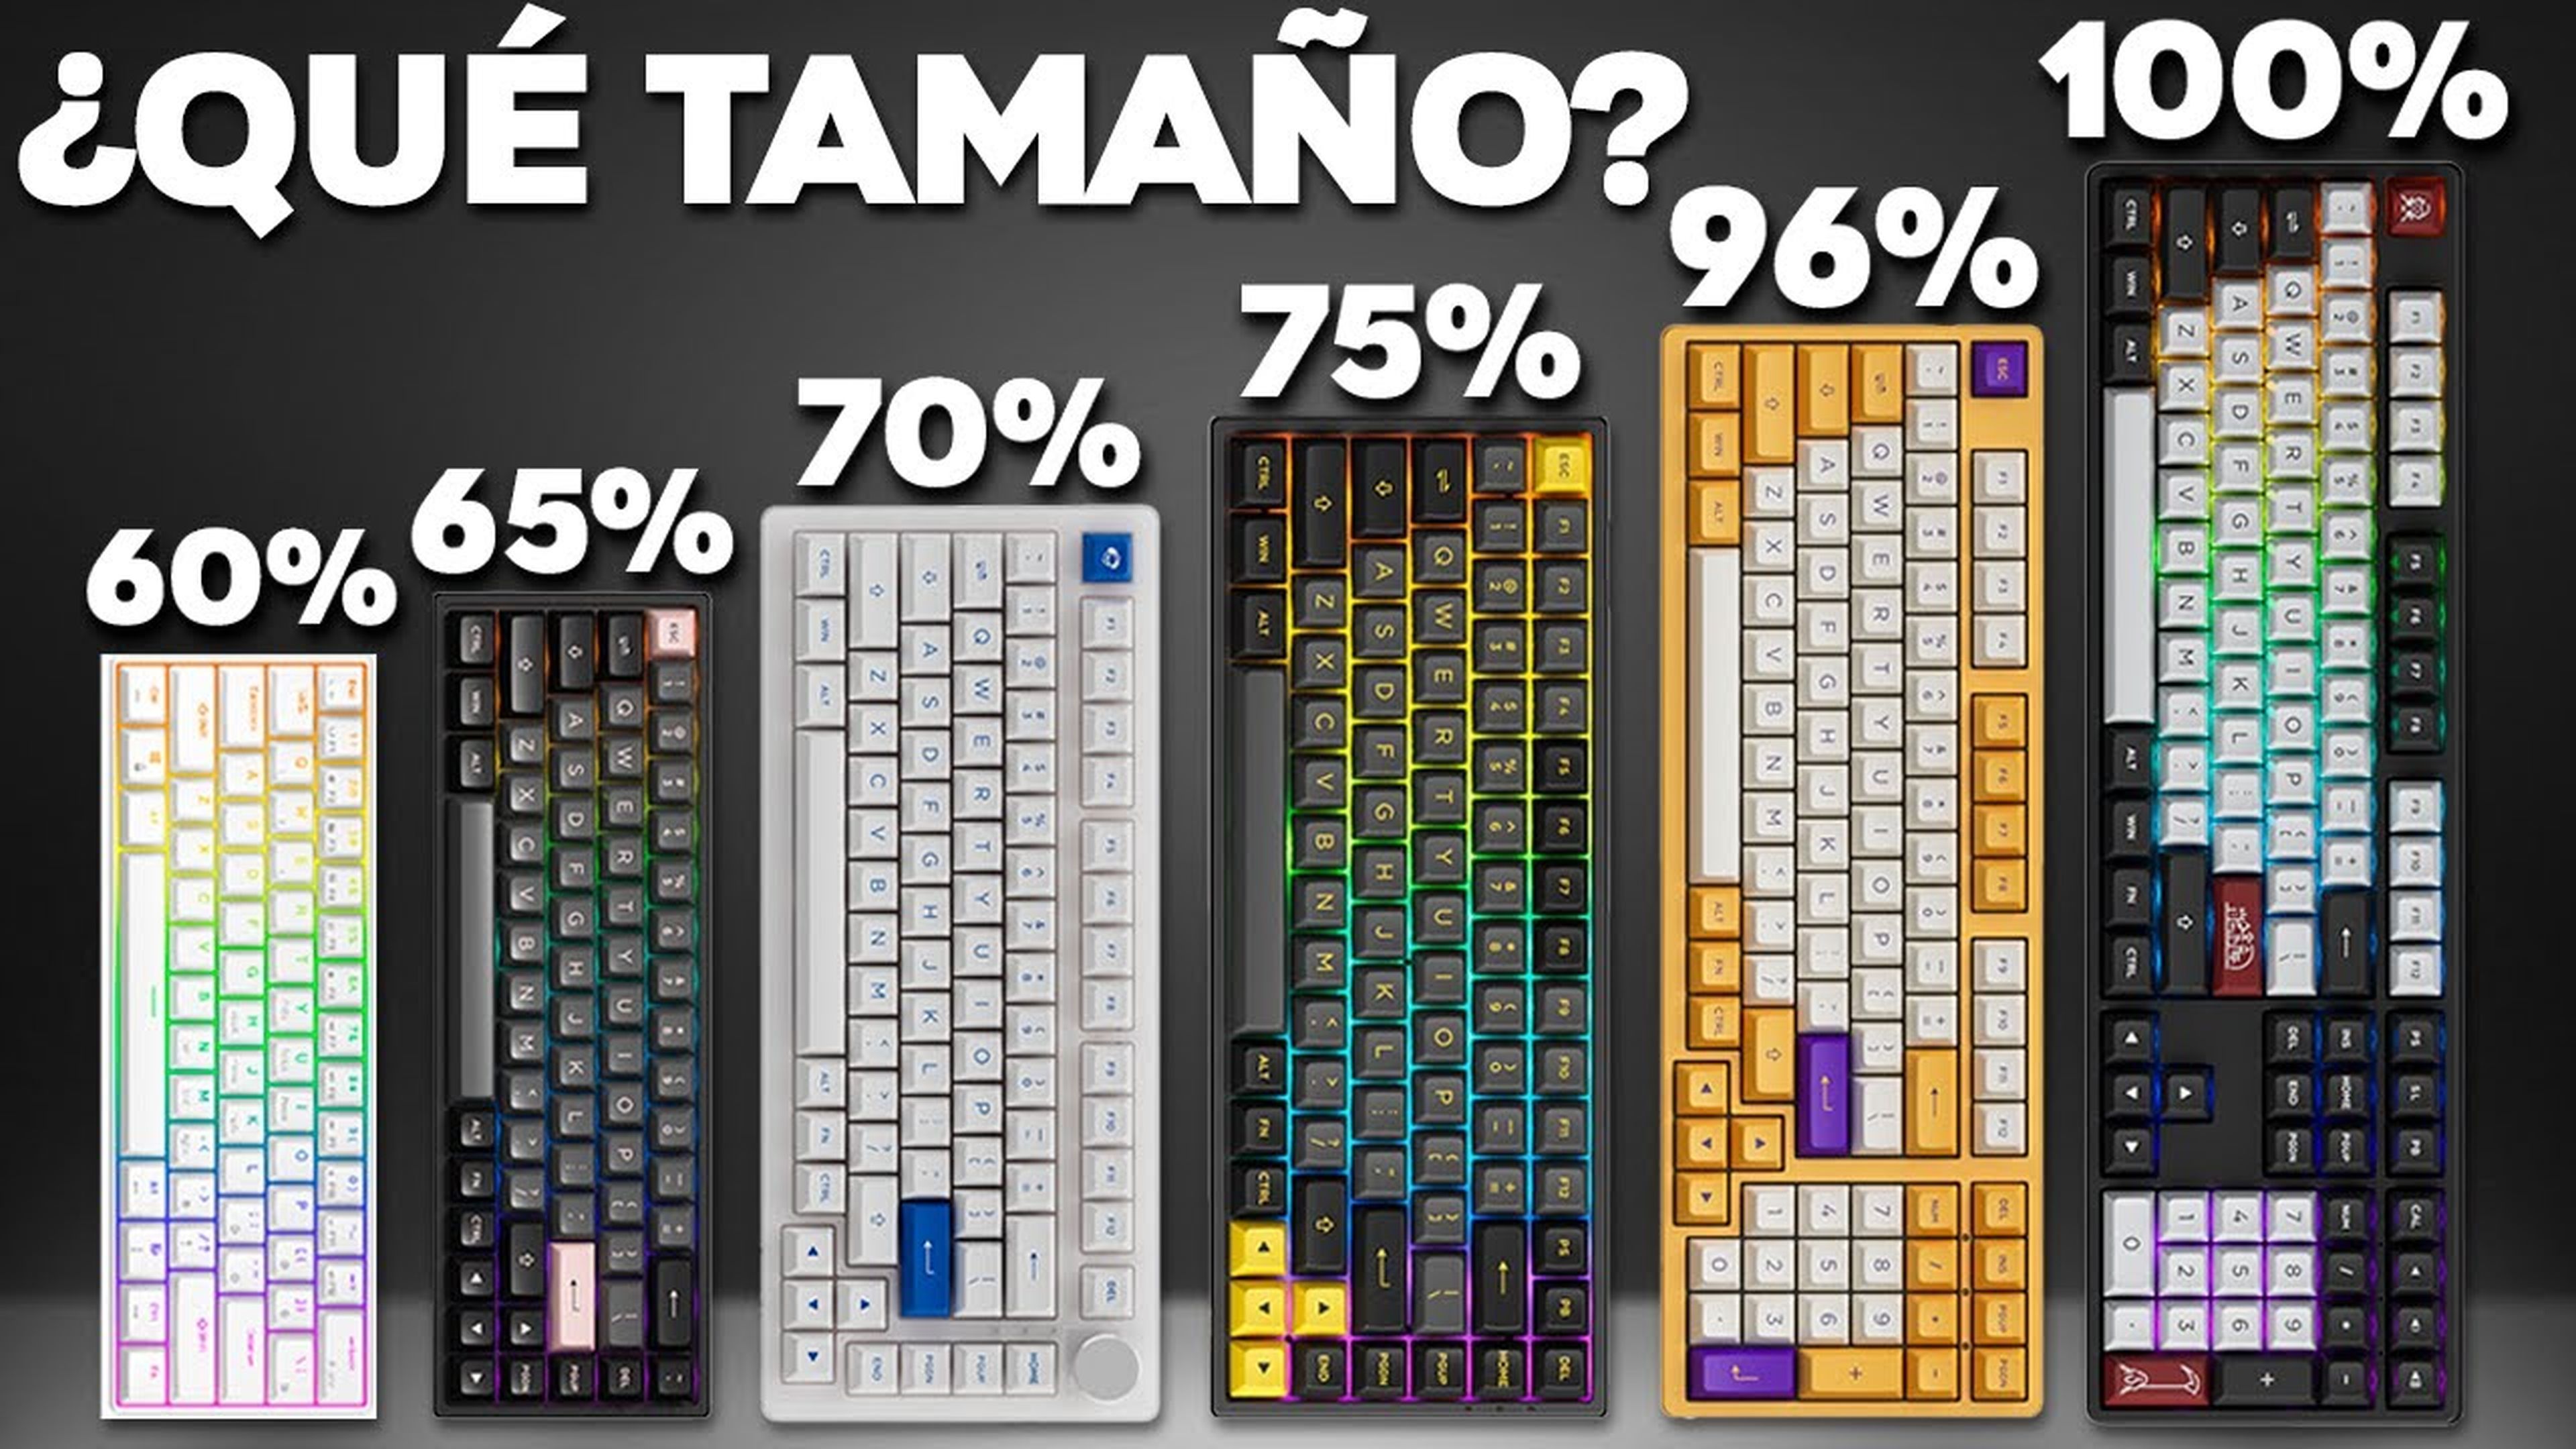 Tipos de tamaños de teclados